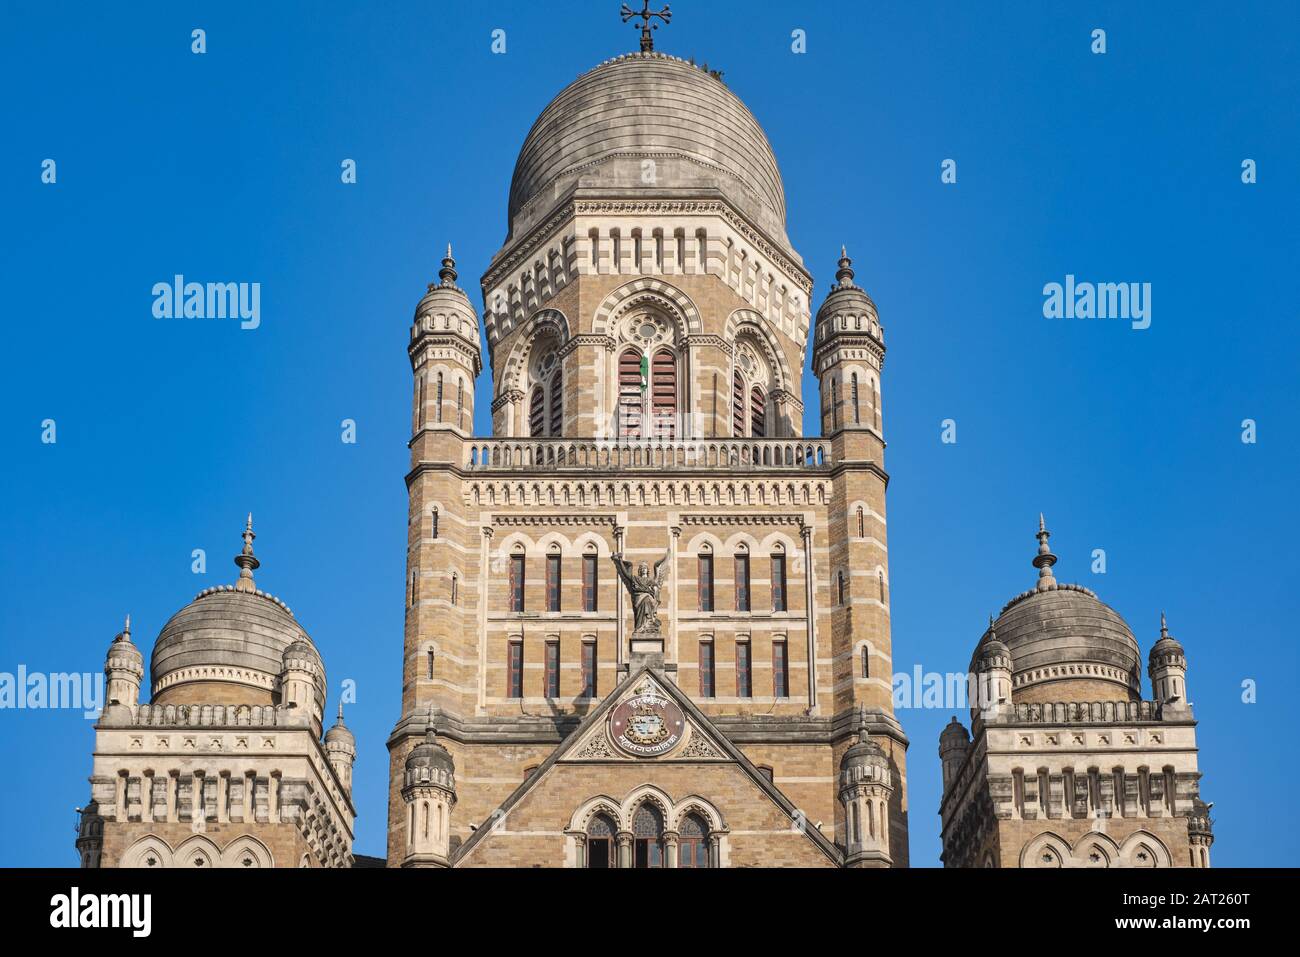 Vista parziale del BMC (Bombay Municipal Corporation) Building nella zona di Fort, Mumbai, India Foto Stock